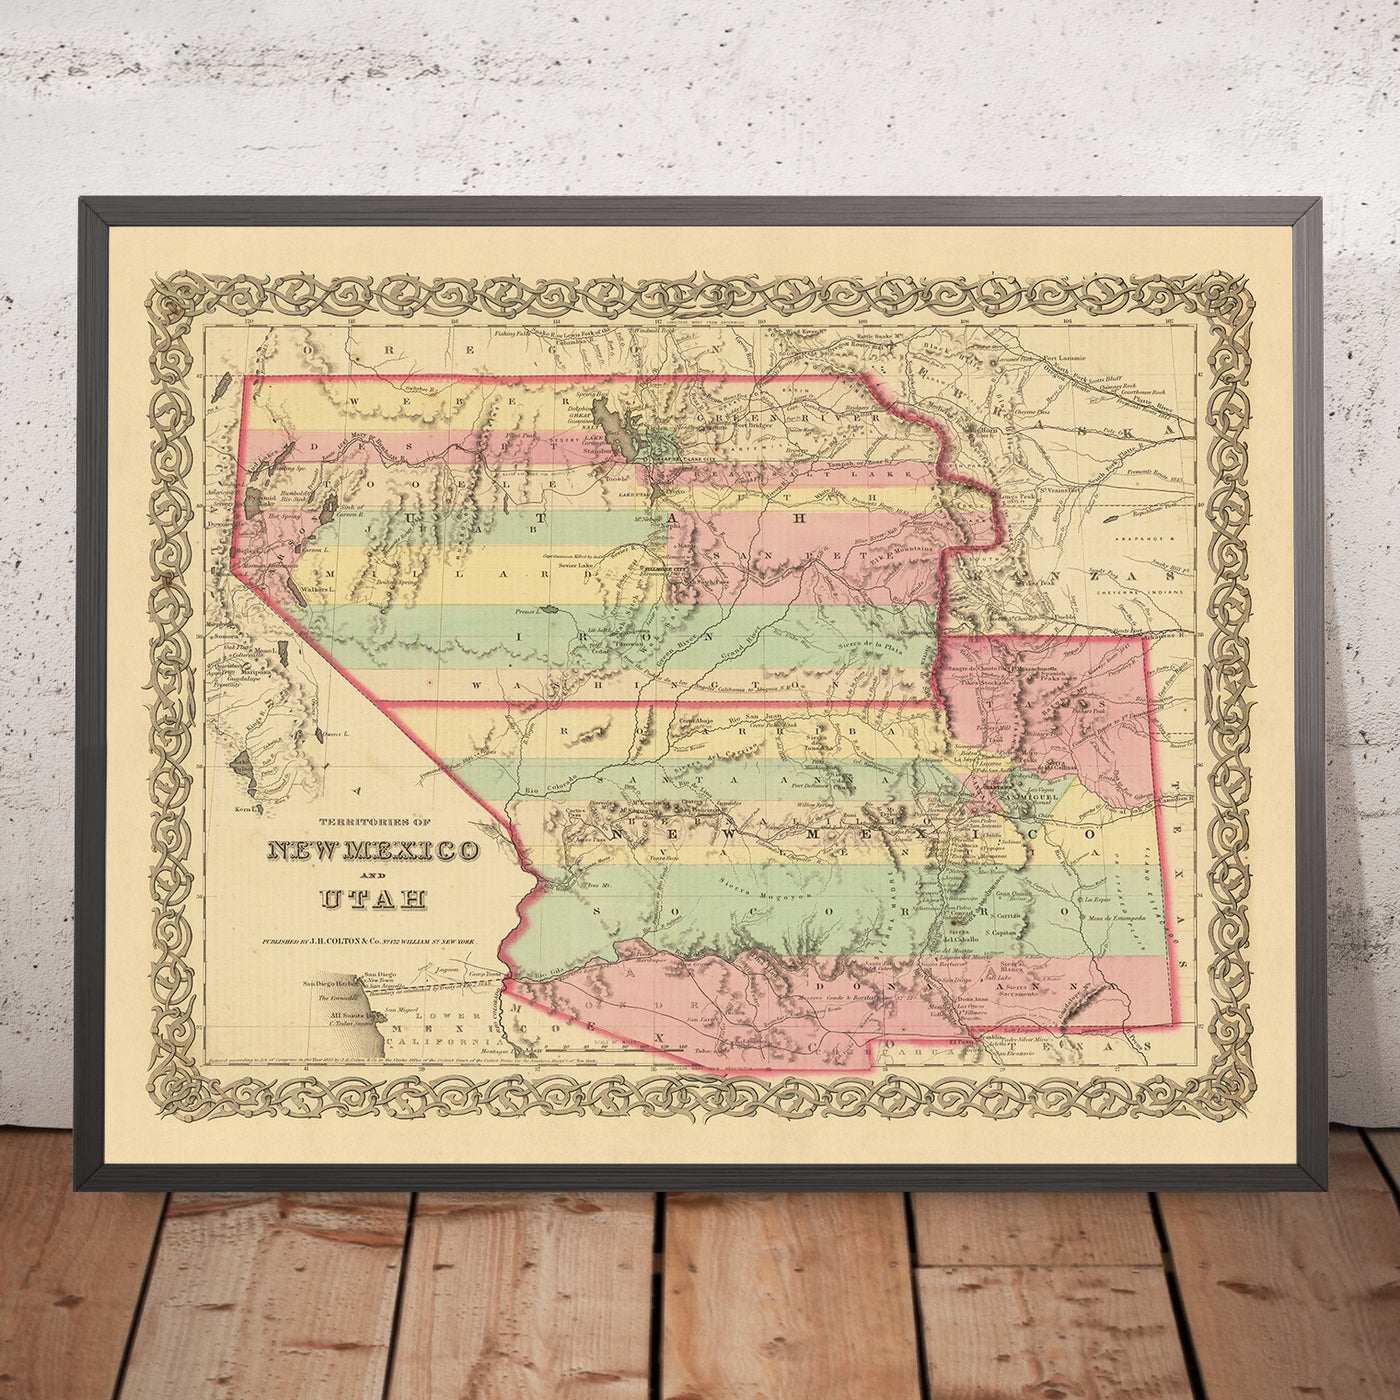 Mapa antiguo de Nuevo México y Utah por JH Colton, 1856: Santa Fe, Albuquerque, Provo, Salt Lake City, St. George